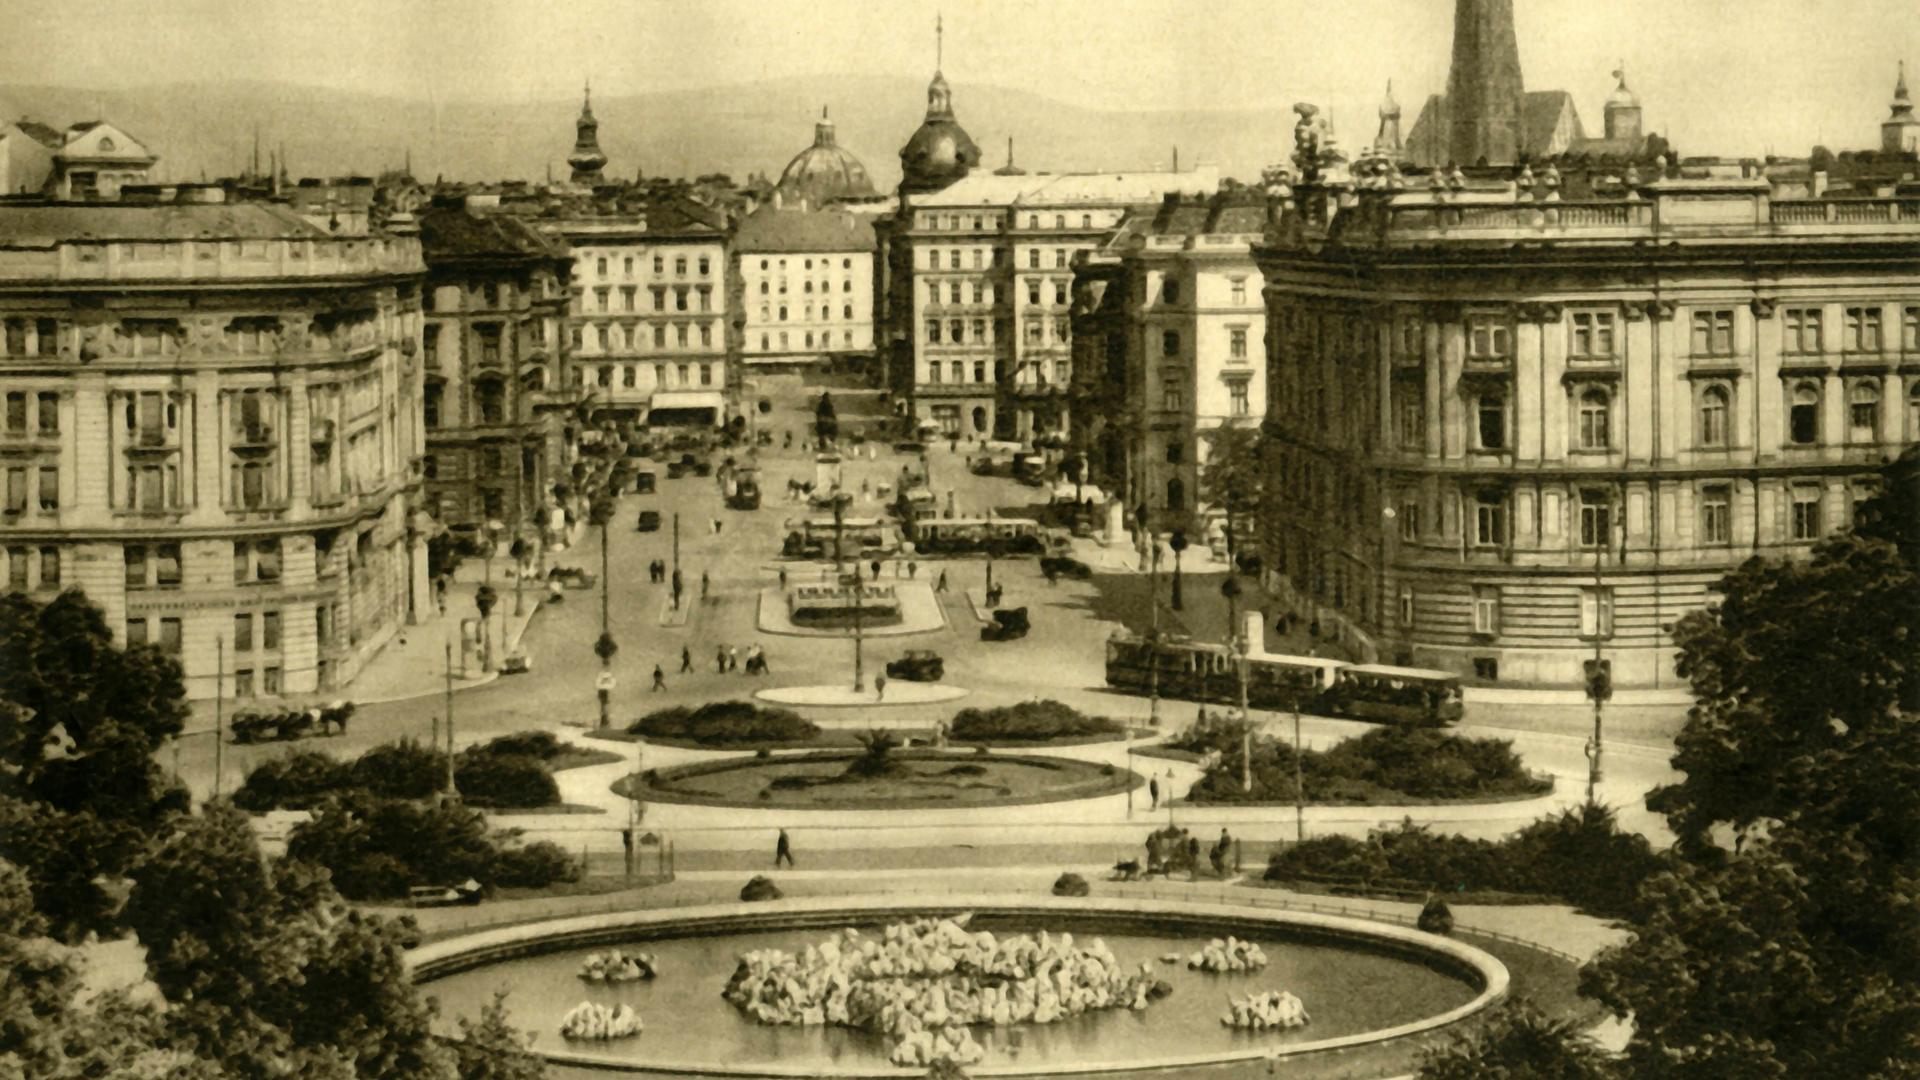 Schwarz-Weiß-Foto von Wien in den 1930er-Jahren. Zu sehen sind eine Parkanlage mit einem Springbrunnen und mehrstöckige Wohnhäuser.  